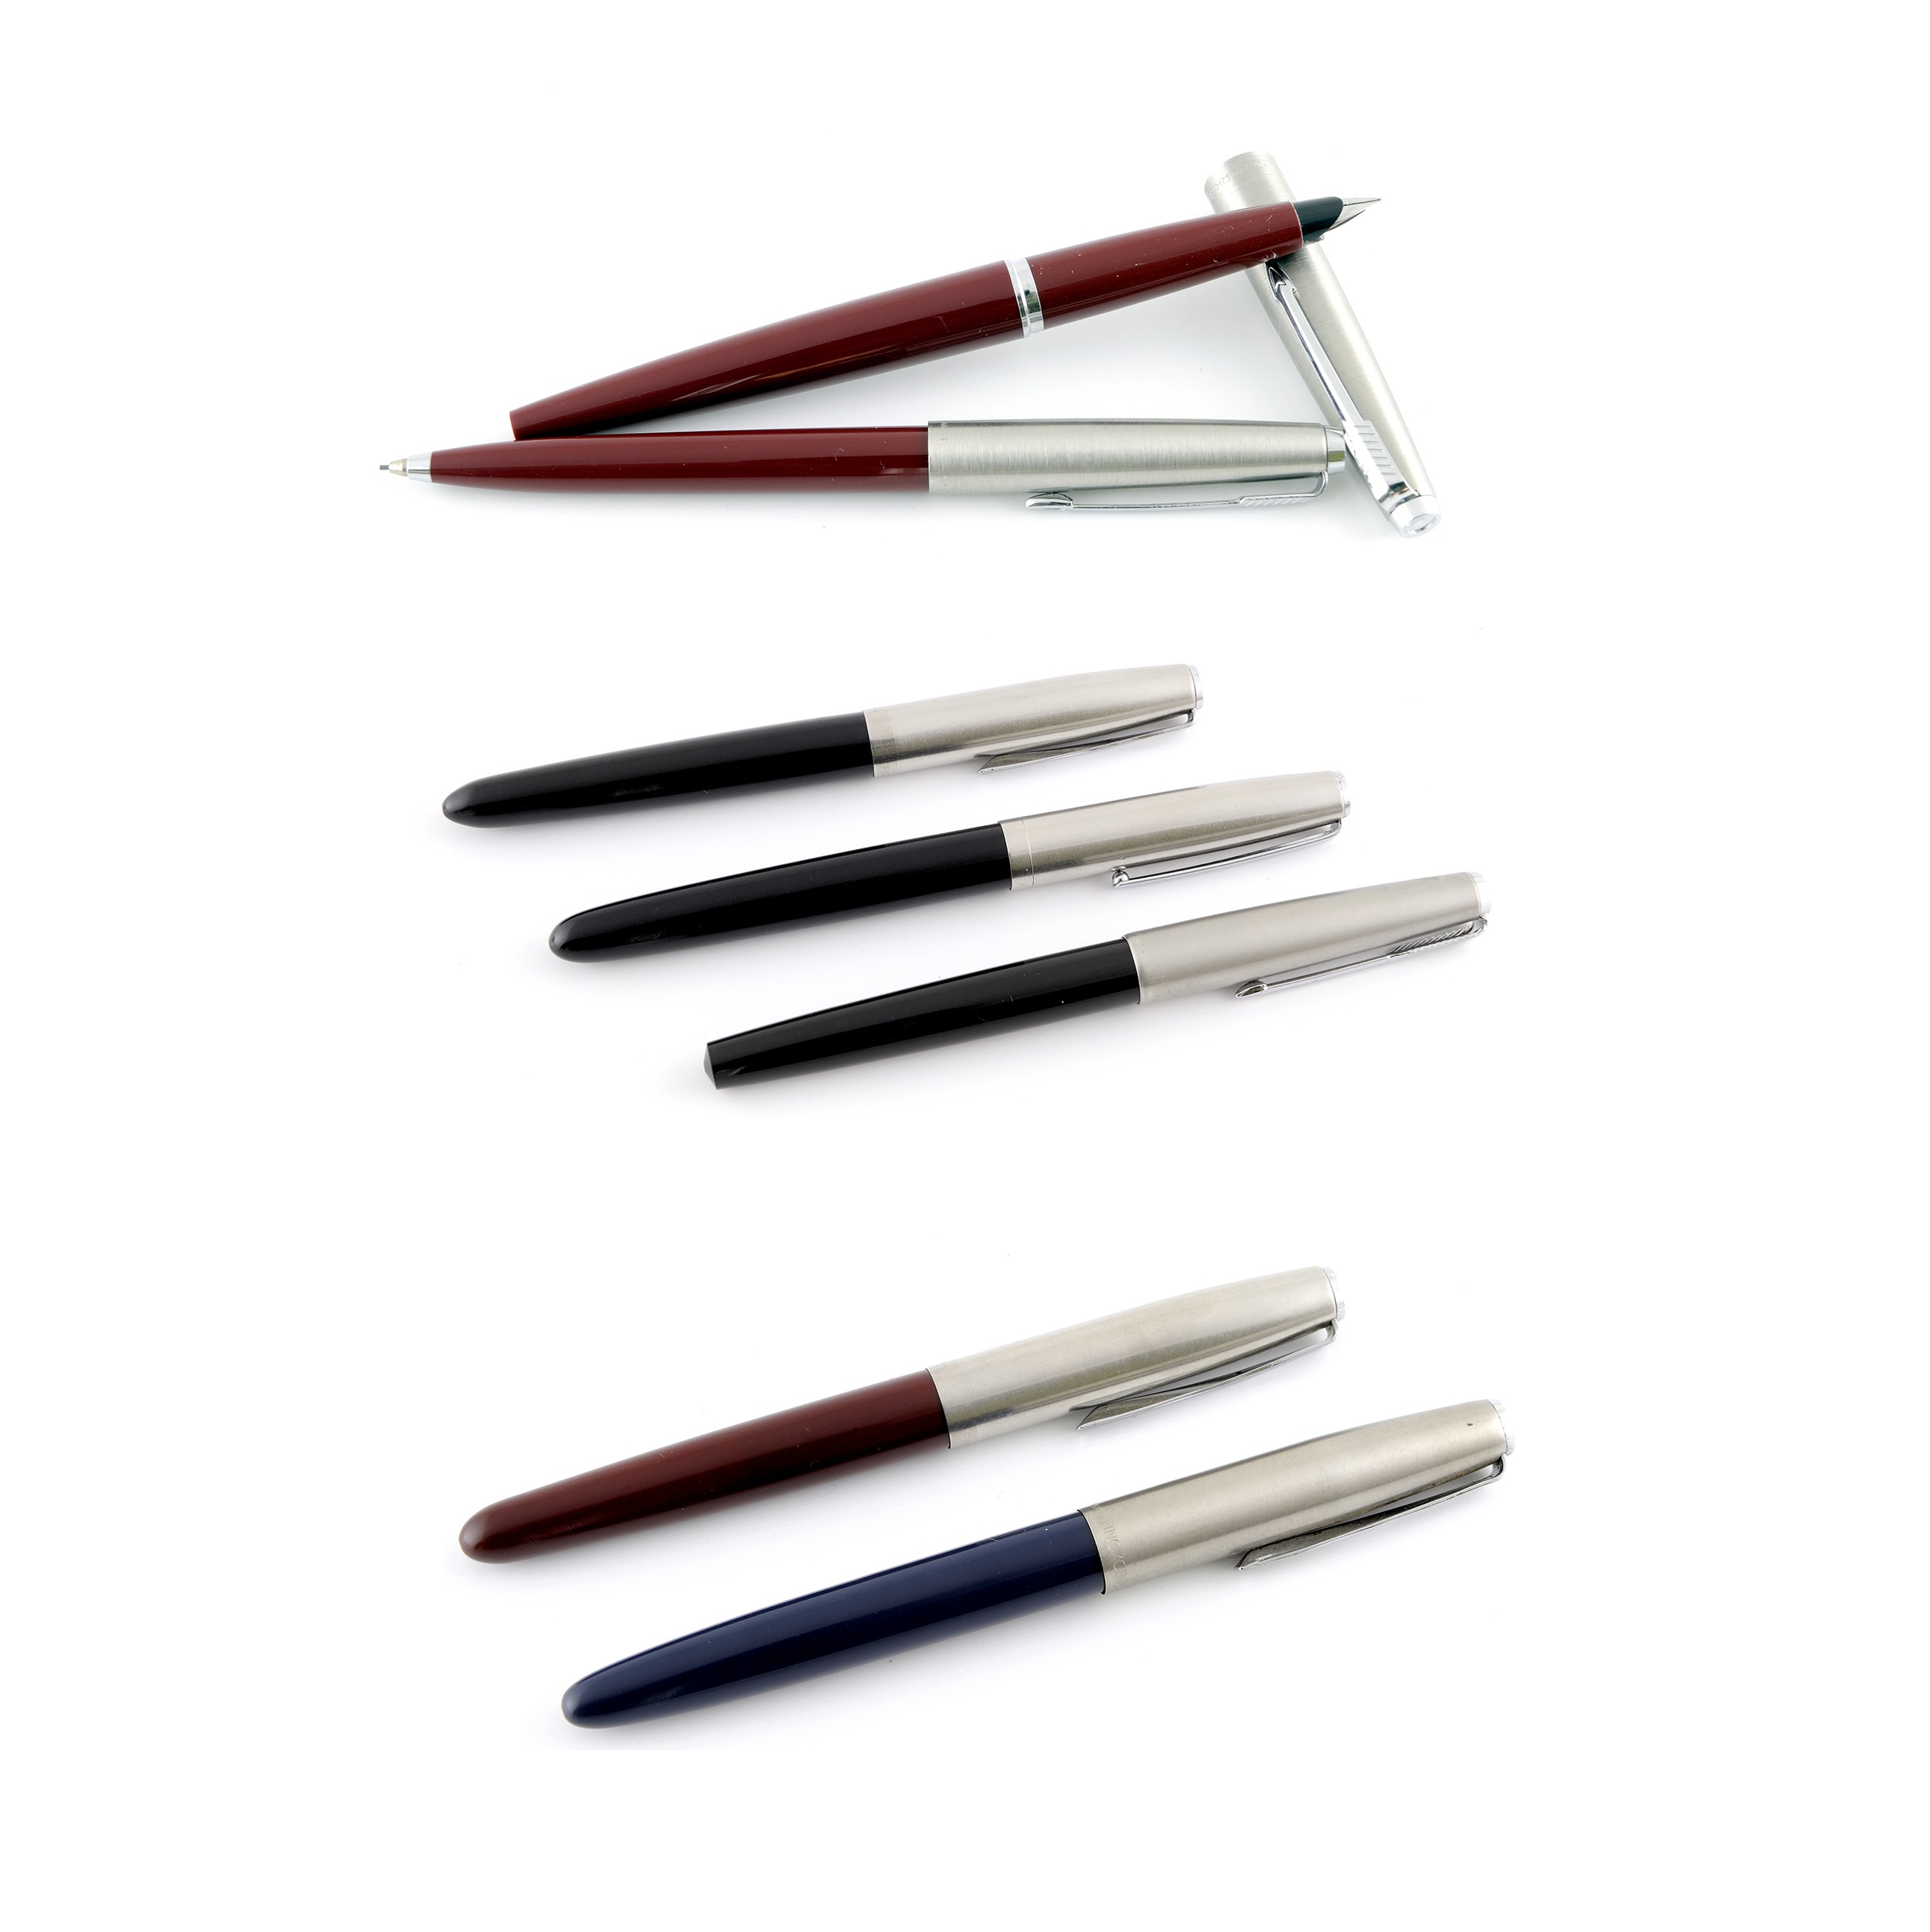 Ensemble de six stylos et un stylo des marques PARKER et INOXCROM.